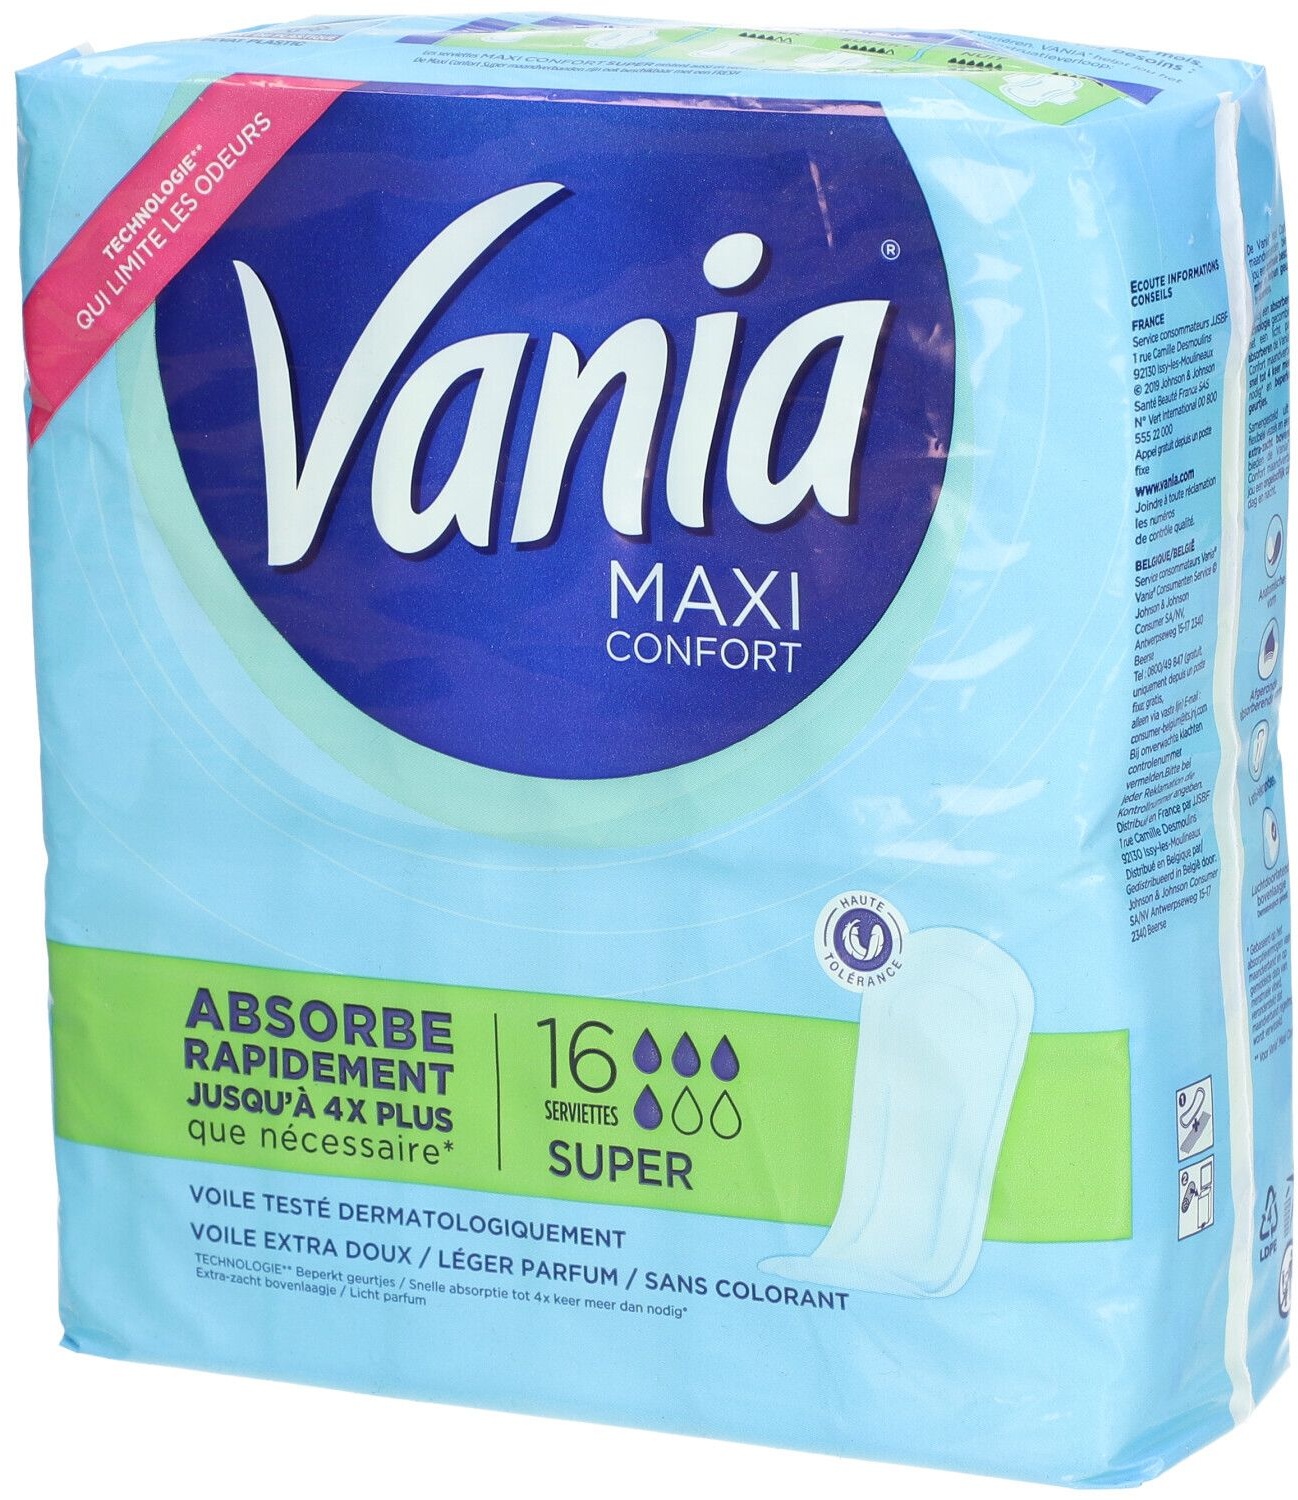 Vania Serviettes Hygiéniques, Maxi Confort, Super, 16 Serviettes 16 pc(s) serviettes hygiénique(s)